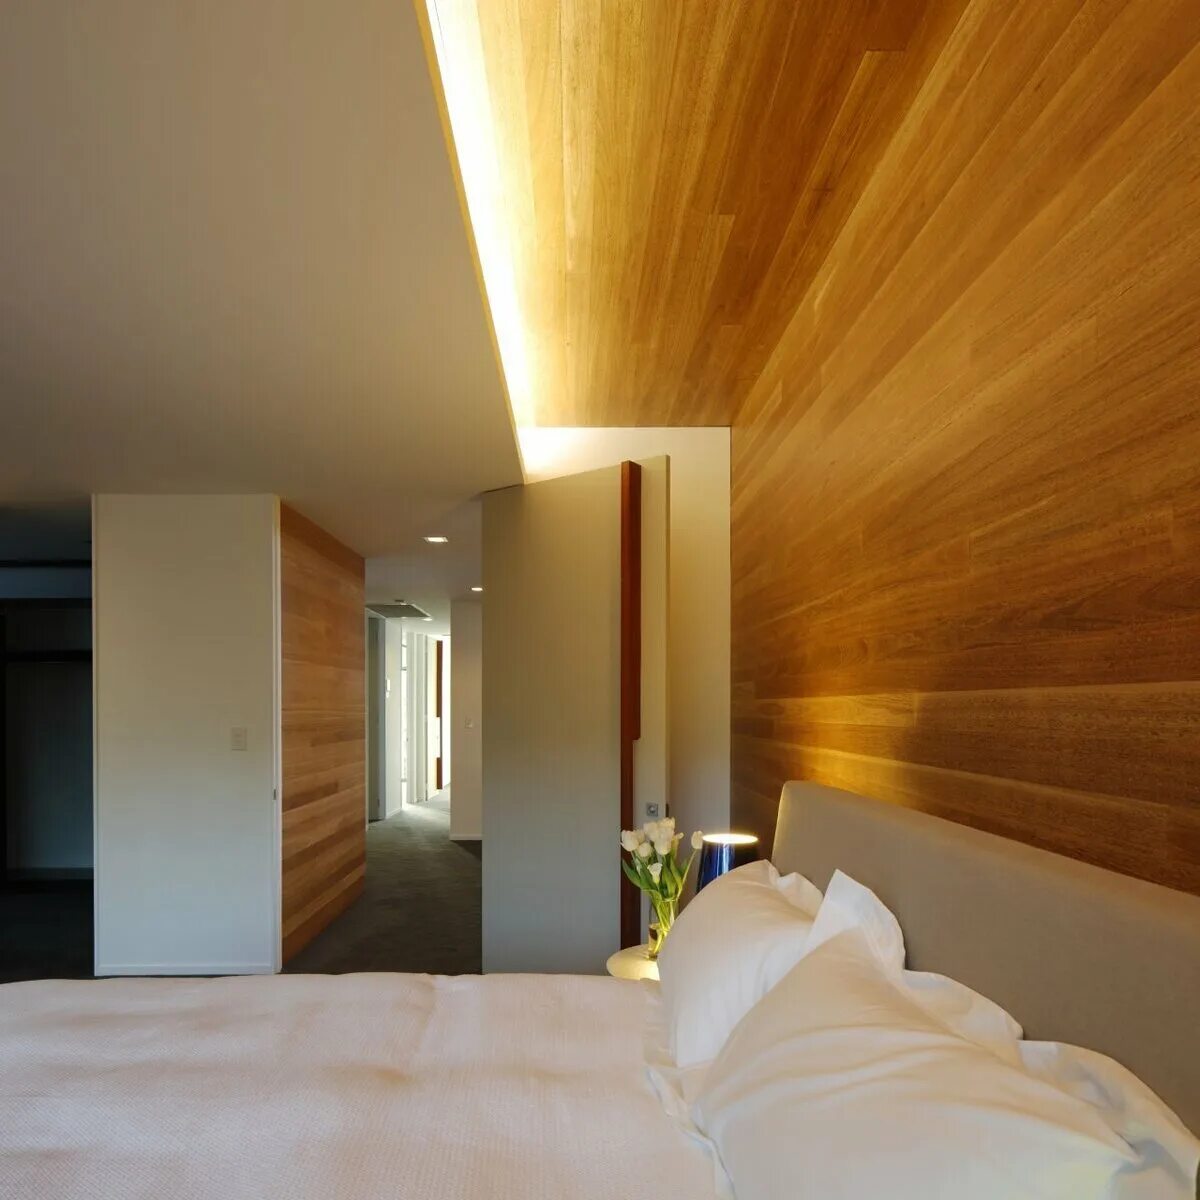 Проектирование света теплый свет. Деревянный потолок в спальне. Деревянный потолок с подсветкой. Освещение в спальне. Освещение на деревянном потолке.